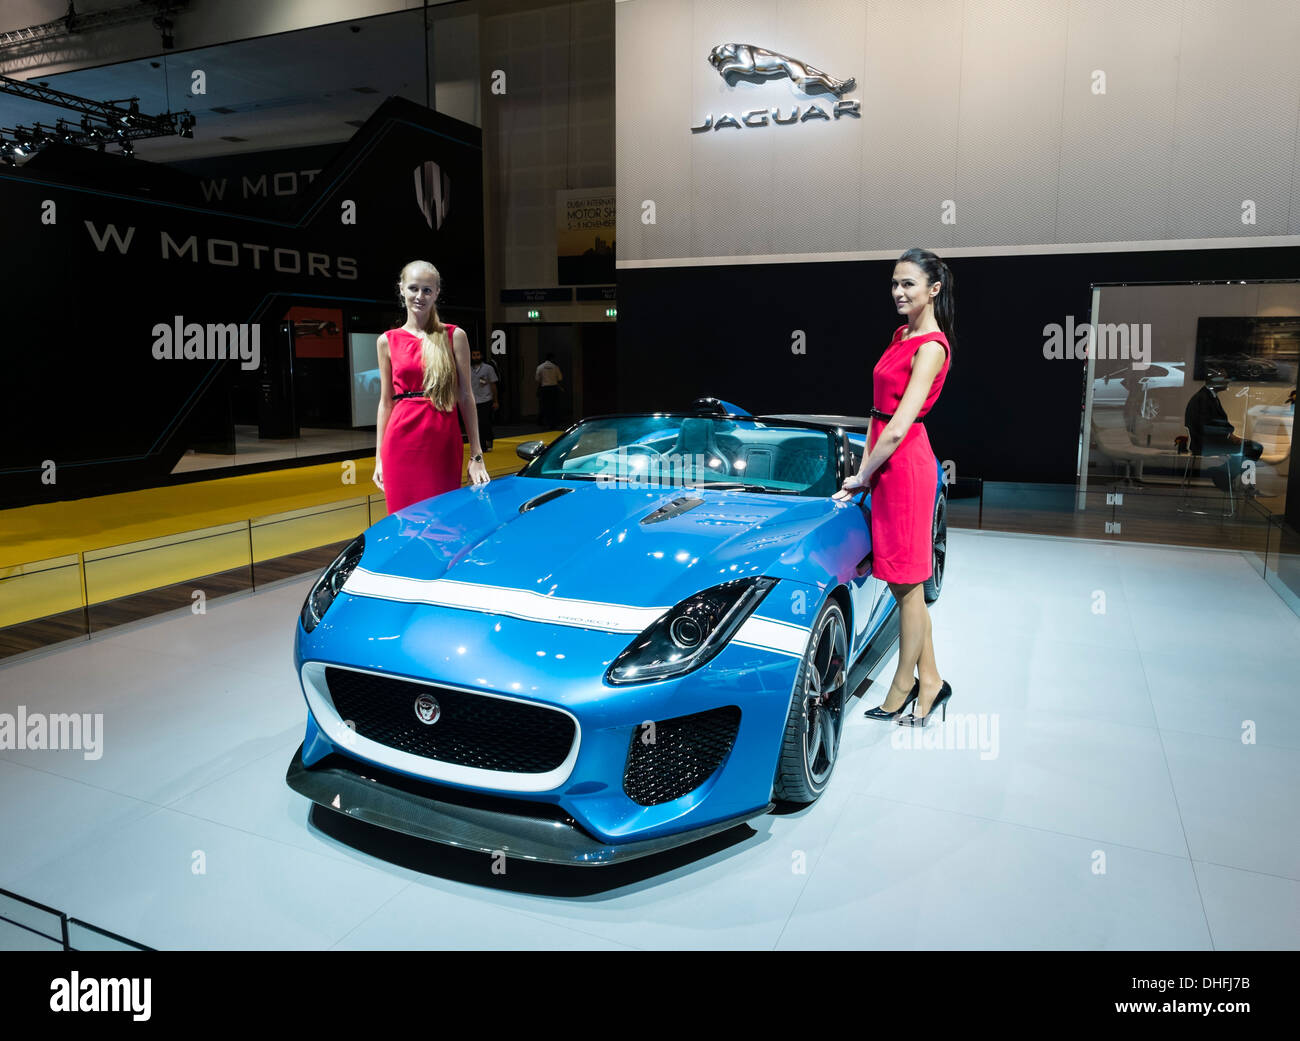 Projet 7 concept car Jaguar au Dubaï Motor Show 2013 Emirats Arabes Unis Banque D'Images